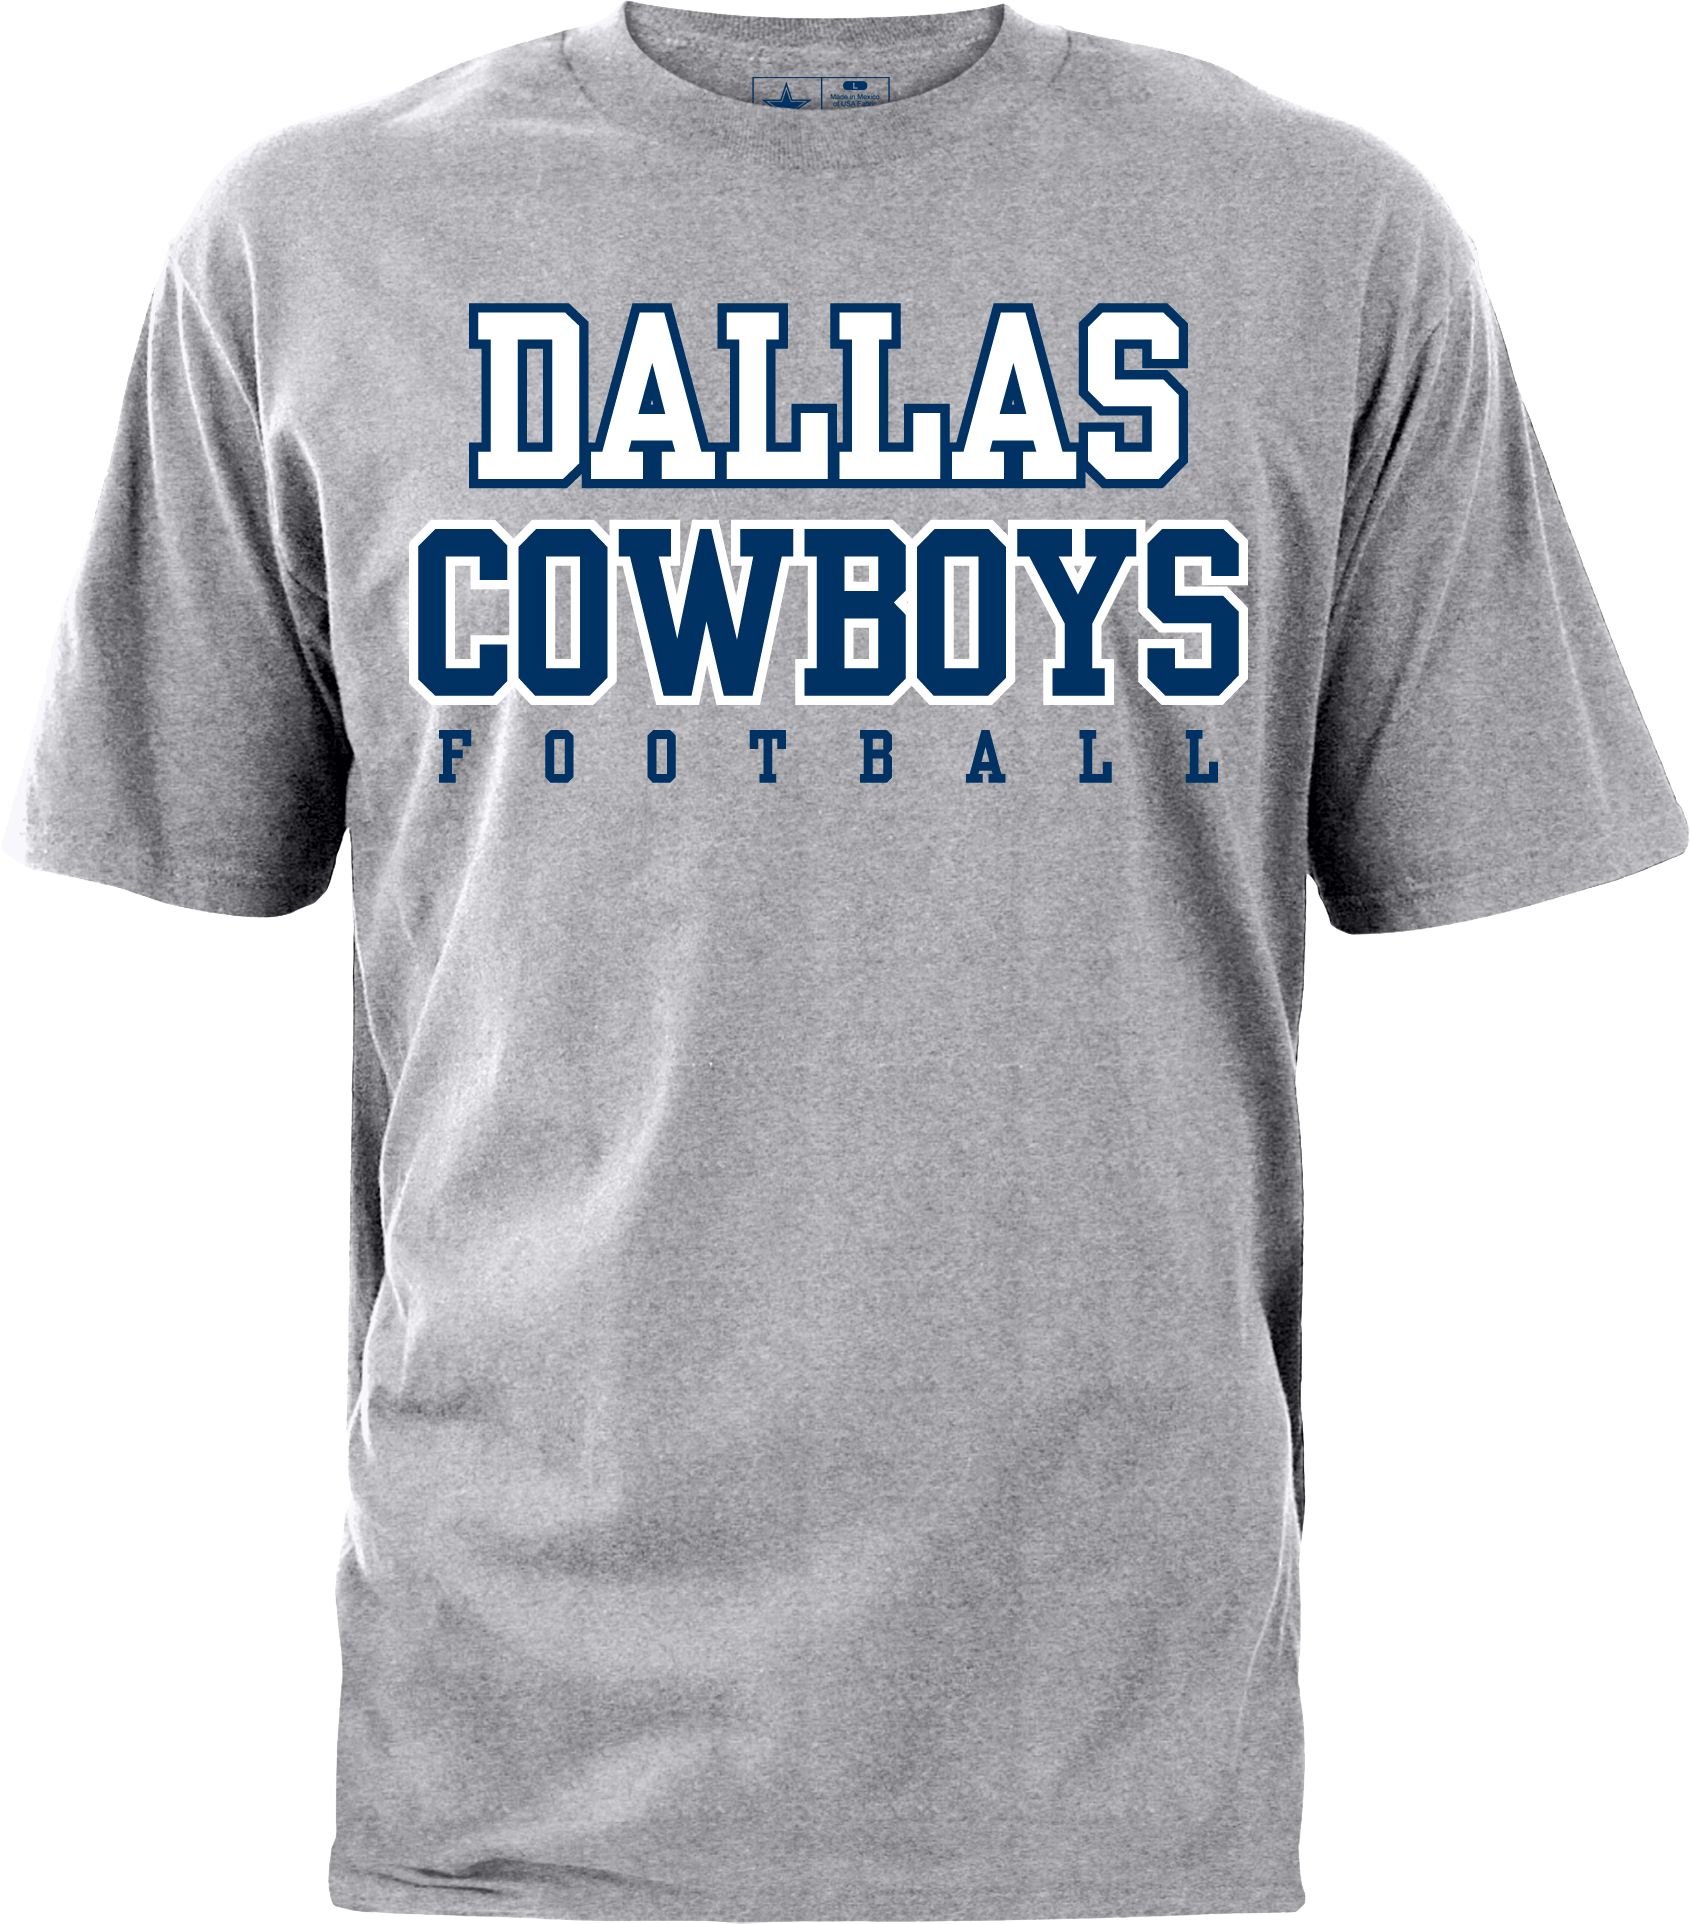 dallas cowboys new shirts